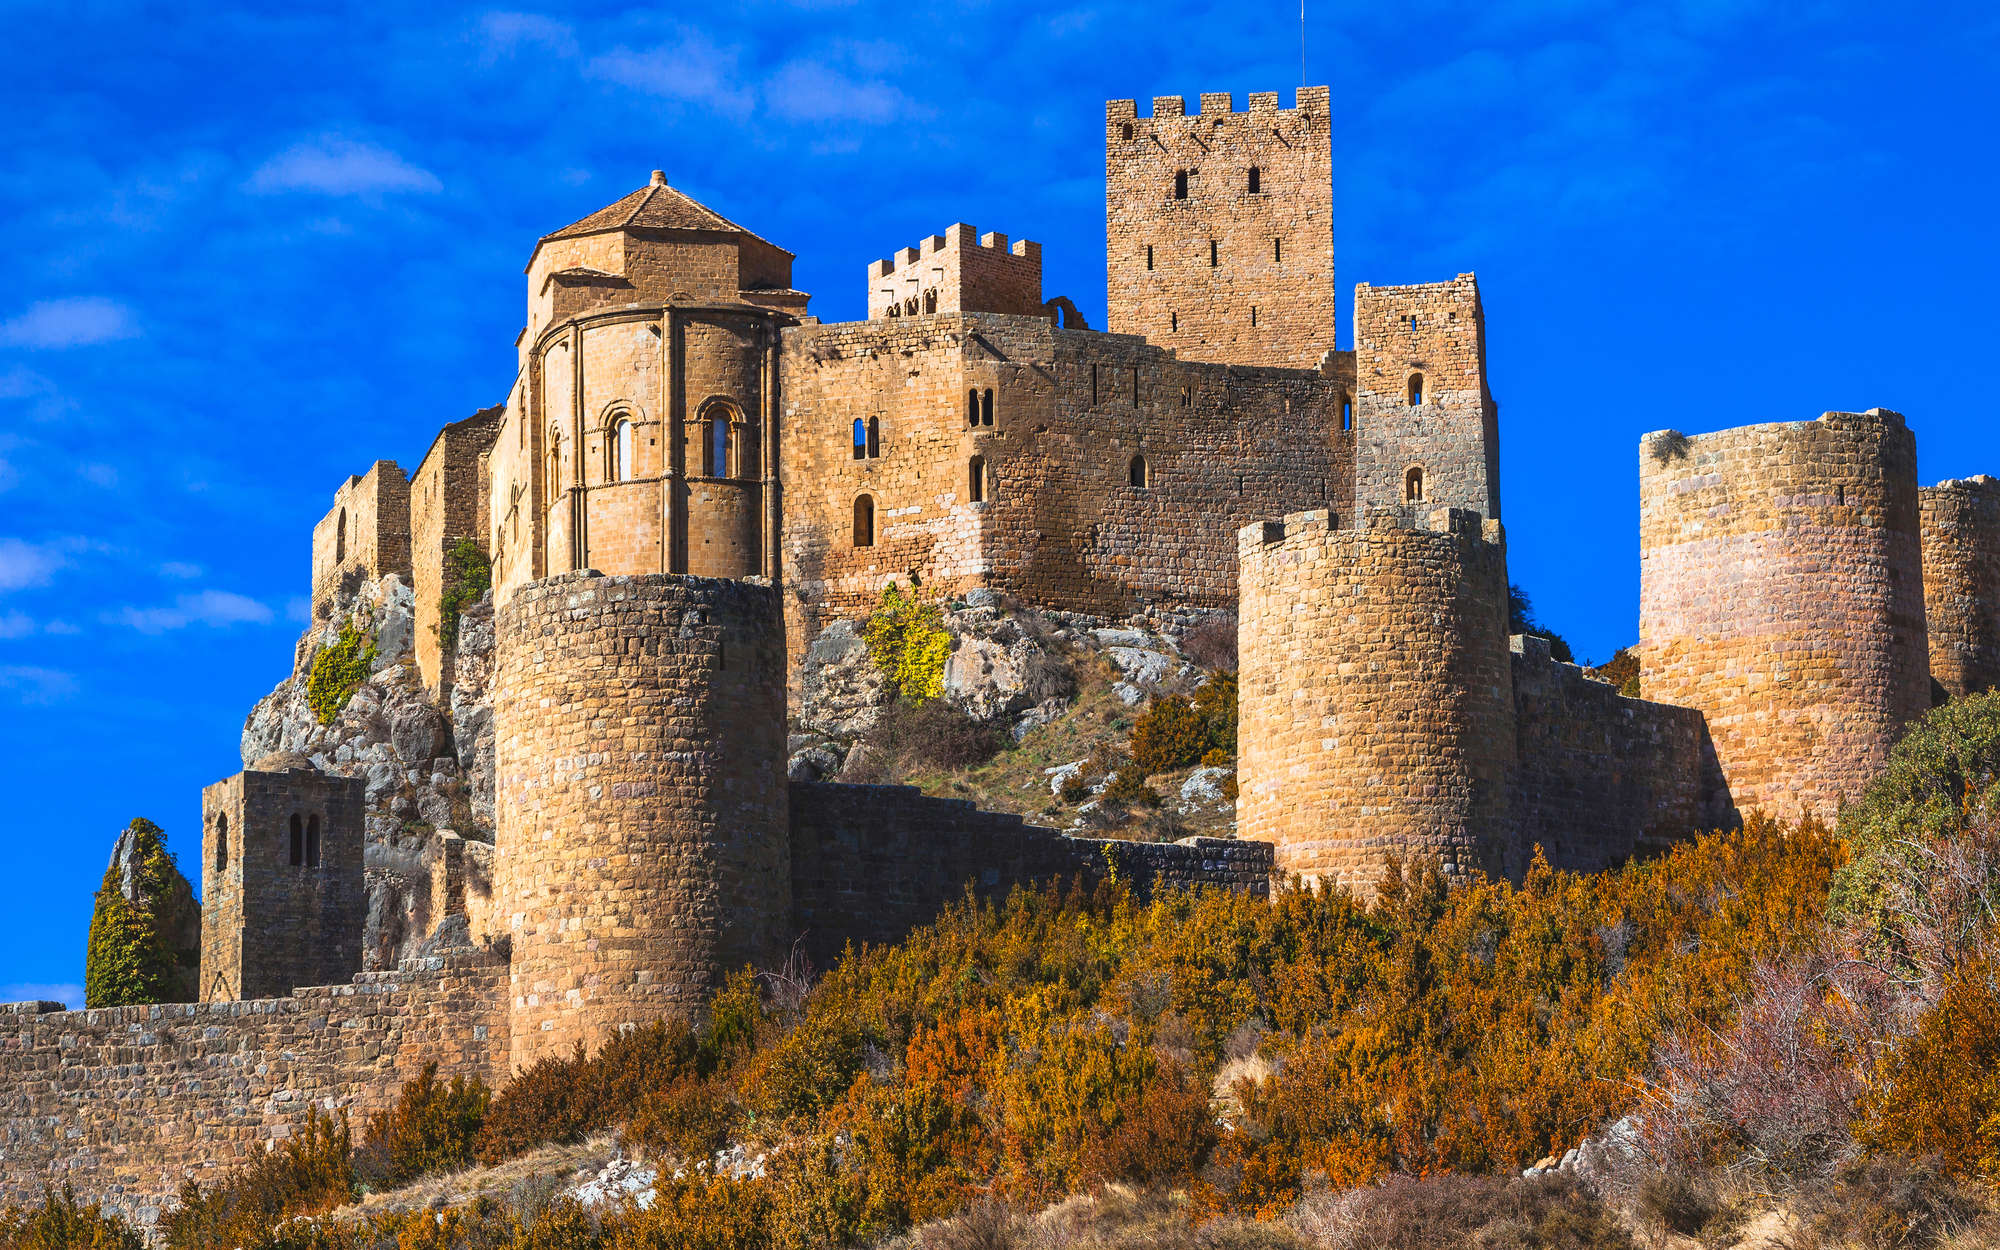             Fototapete Antike Burg mit Steinmauer – Premium Glattvlies
        